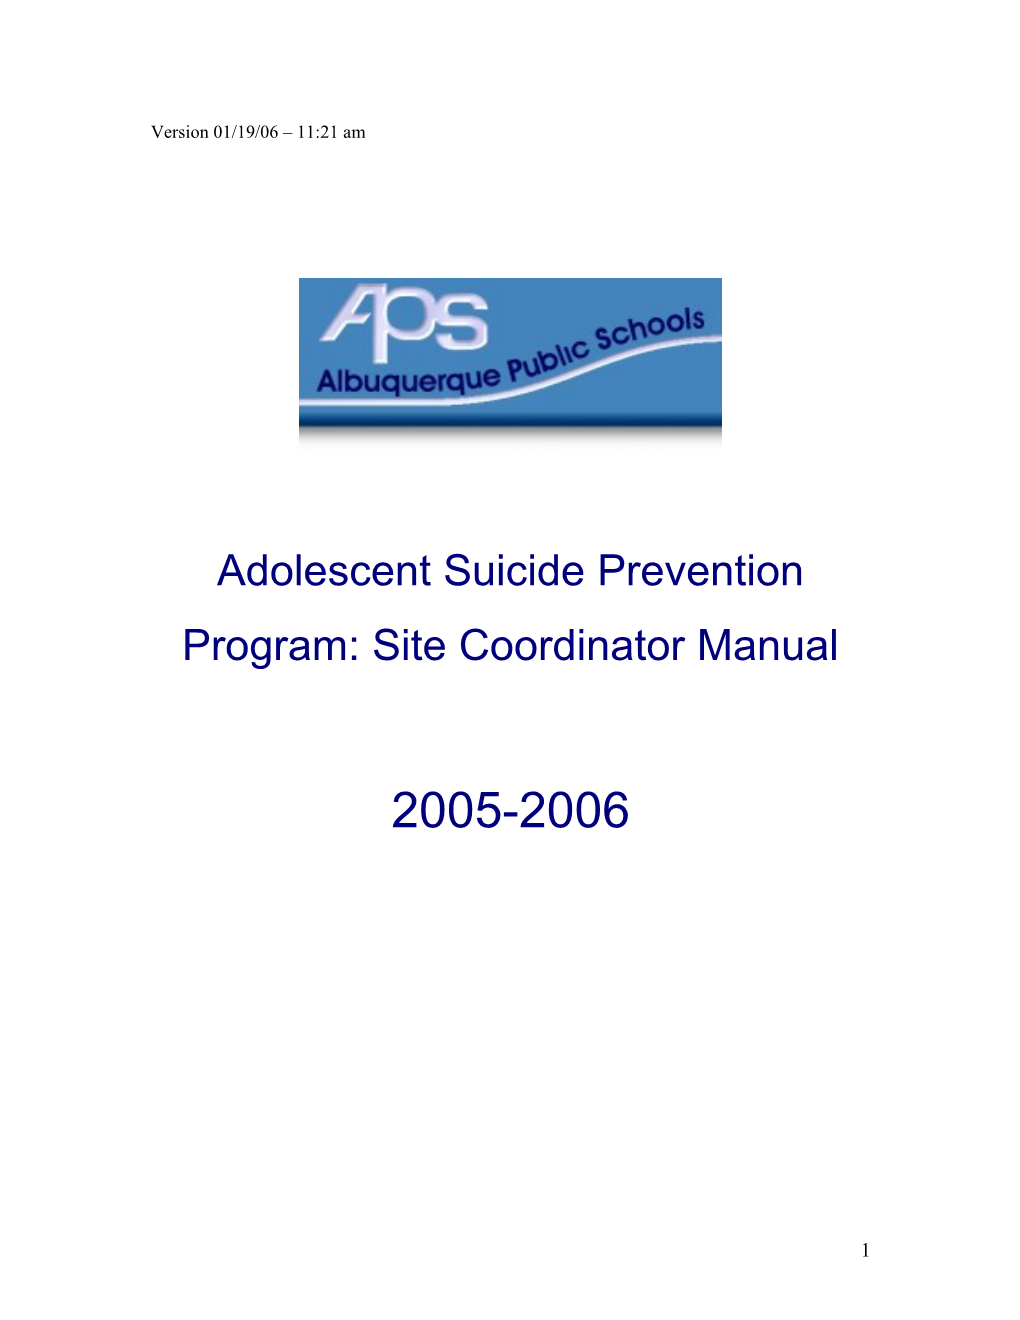 Adolescent Suicide Prevention Program: Site Coordinator Manual